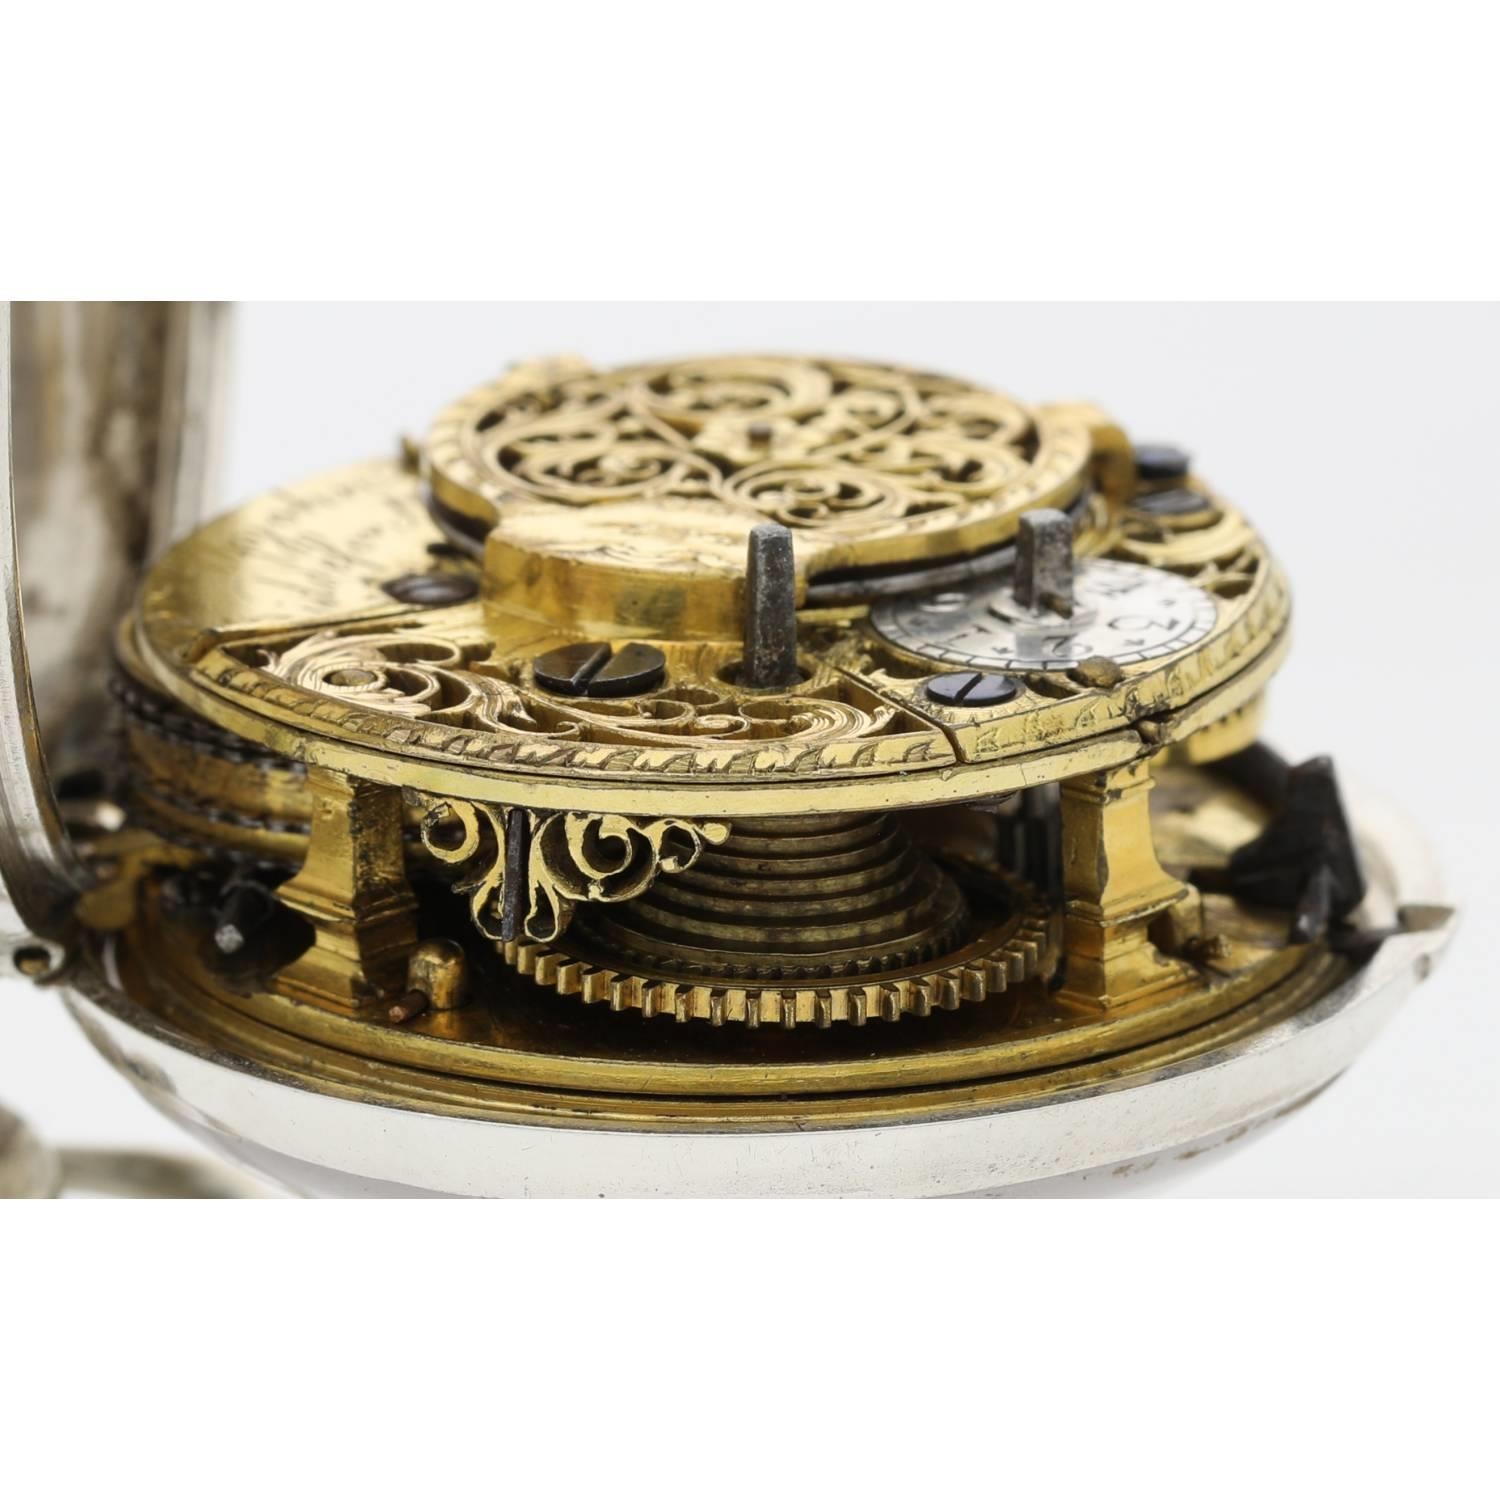 Peter Upjohn, Bideford - George III silver pair cased verge pocket watch, London 1765, signed - Image 5 of 10